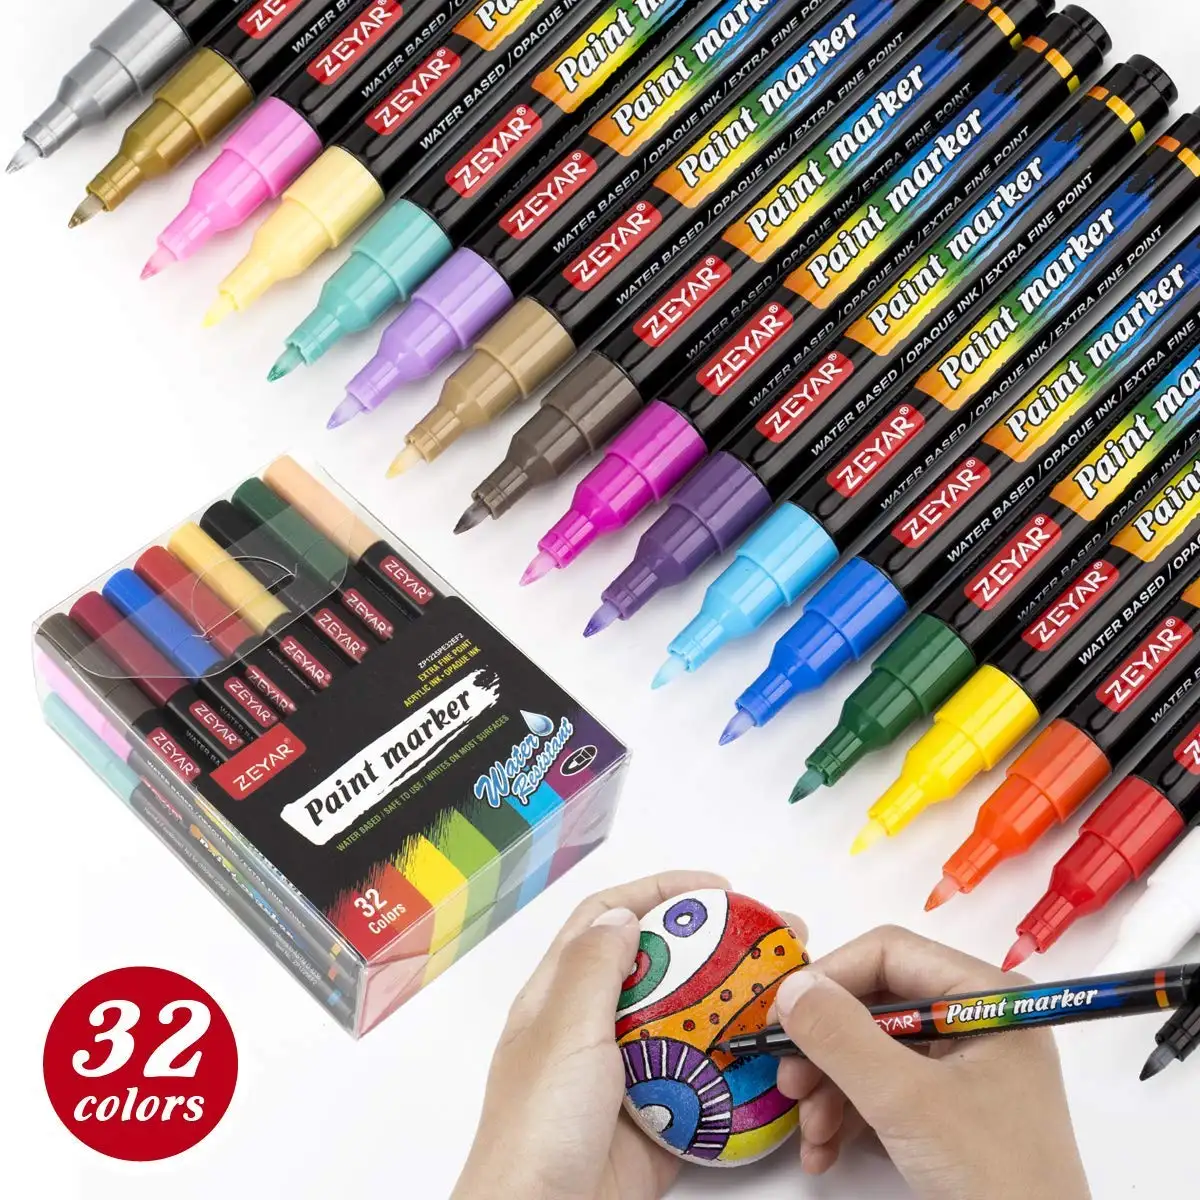 Kunden spezifische Zeyar Marke ZP1132 Glitter Marker wasser basierter Tinten ventil-Action-Stift trocken schnell permanent schreibt auf den meisten Oberflächen